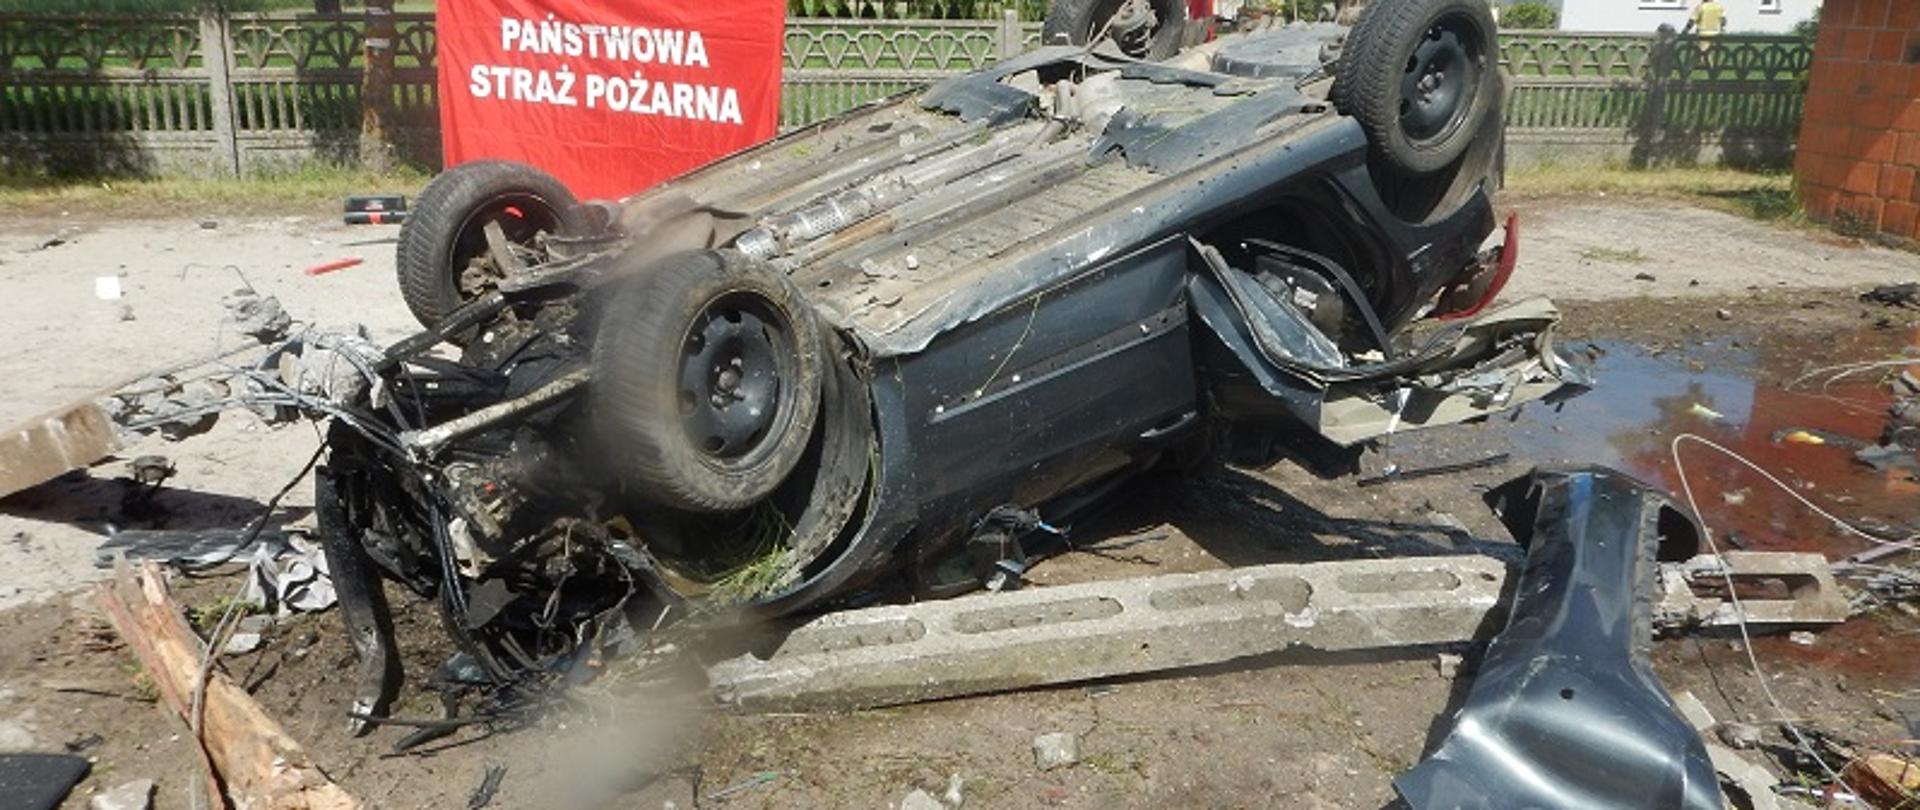 Zdjęcie przedstawia samochód osobowy po wypadku drogowym